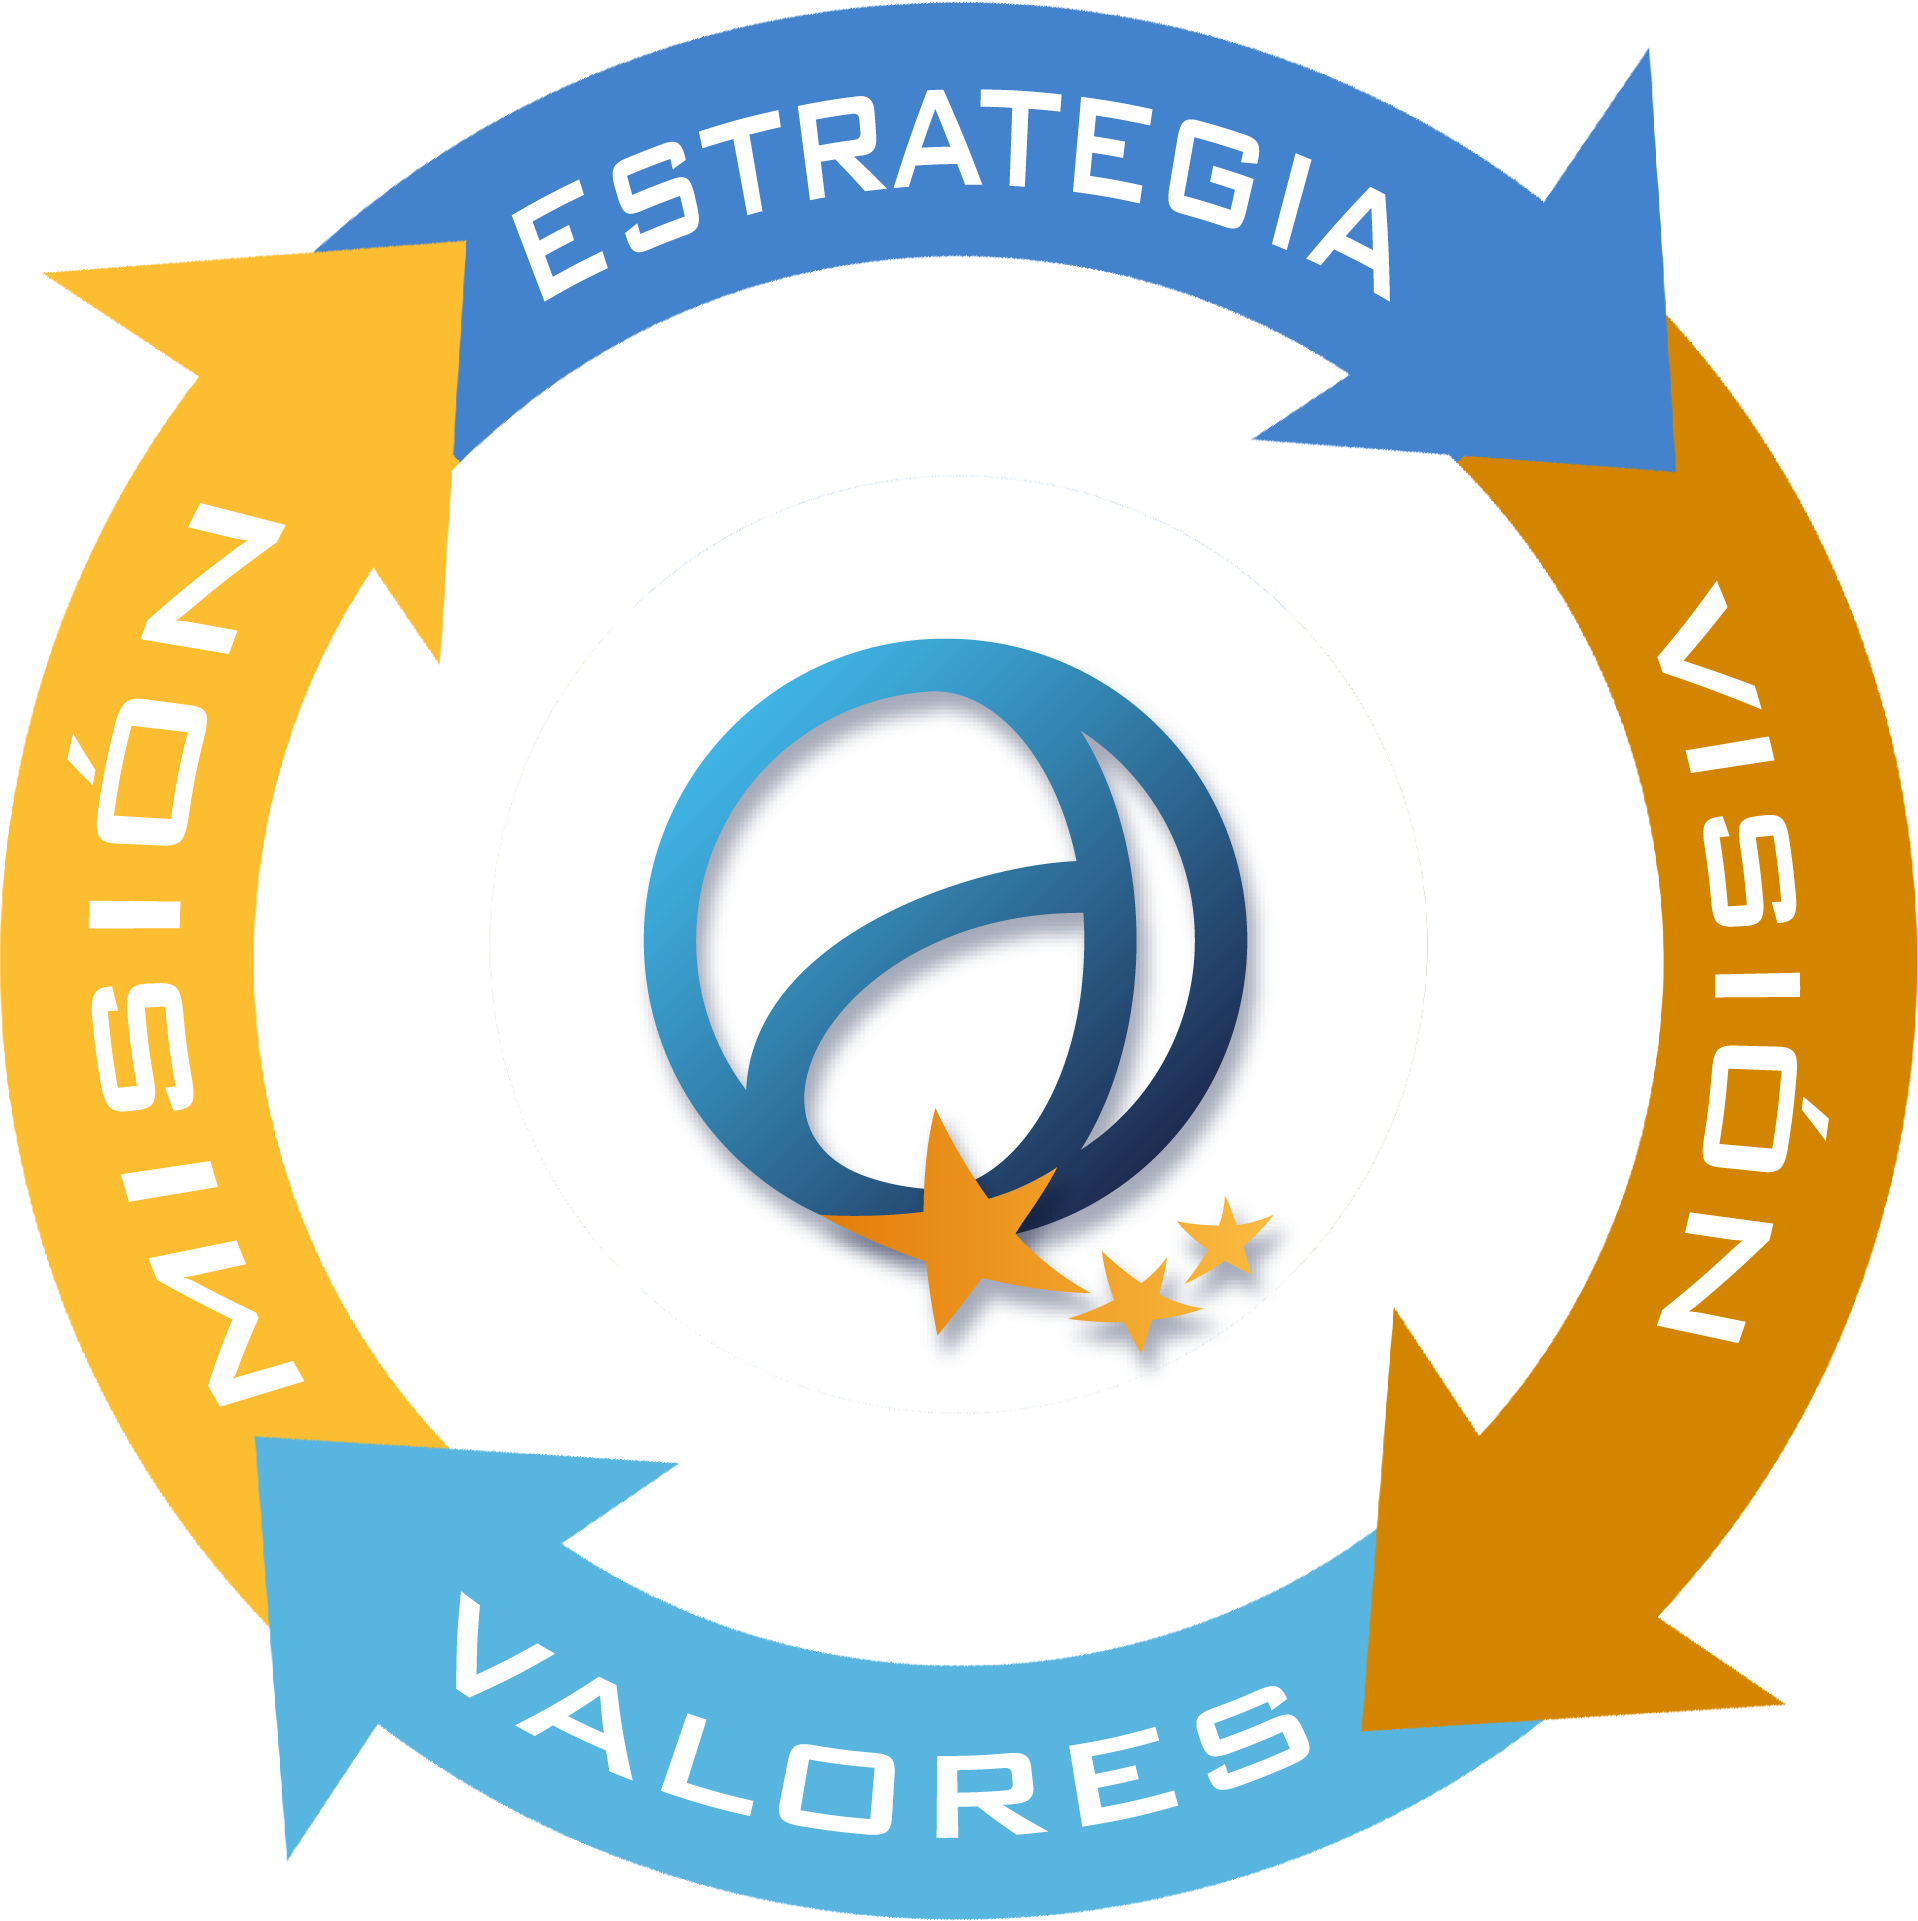 Estrategia, misión, visión y valores